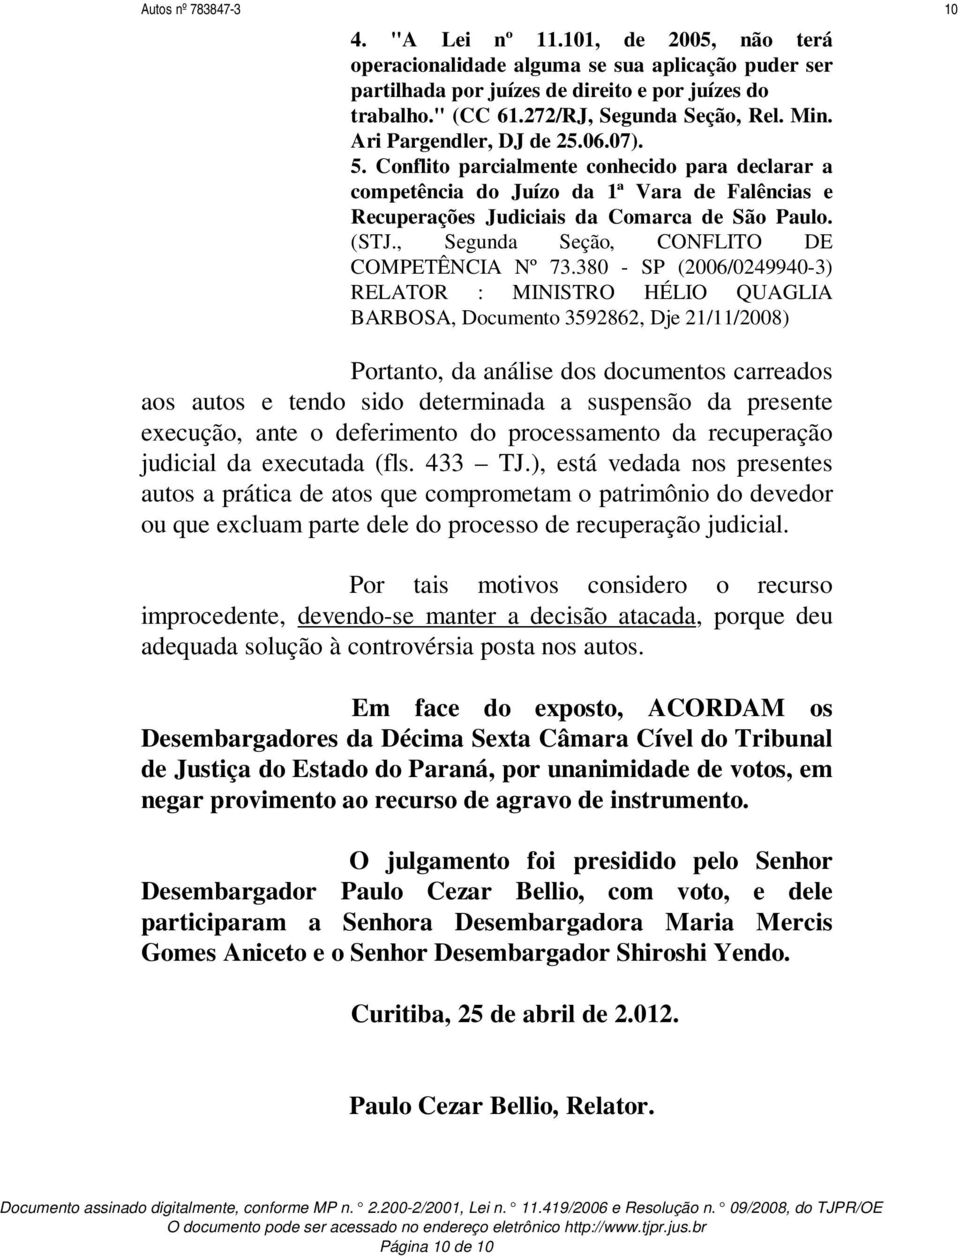 Conflito parcialmente conhecido para declarar a competência do Juízo da 1ª Vara de Falências e Recuperações Judiciais da Comarca de São Paulo. (STJ., Segunda Seção, CONFLITO DE COMPETÊNCIA Nº 73.